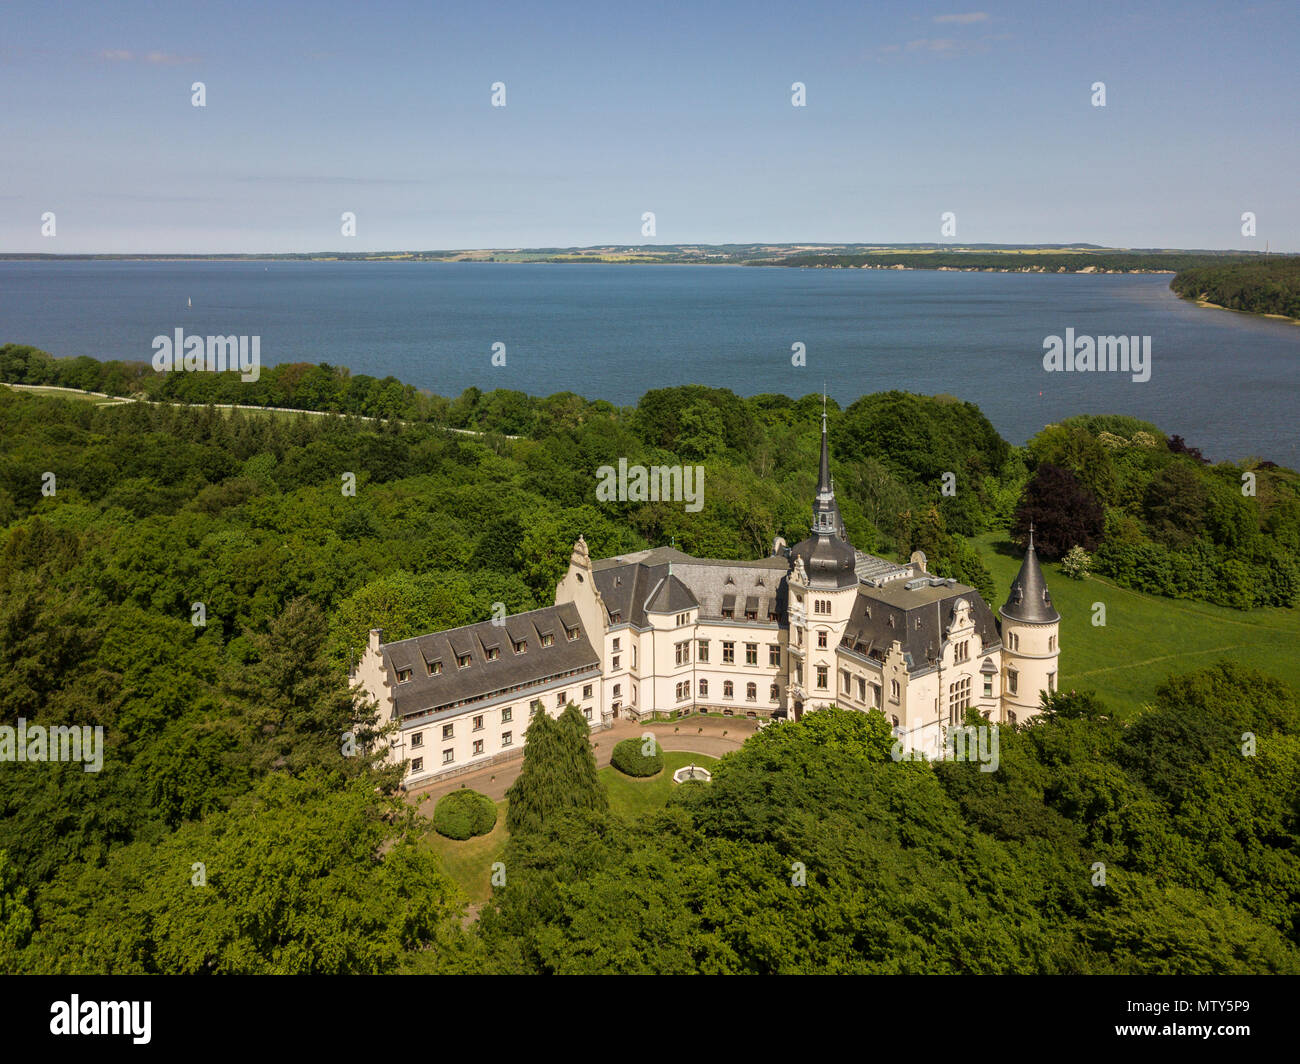 Vista aerea di Ralswiek rinascimentale castello sull'isola di Ruegen Foto Stock